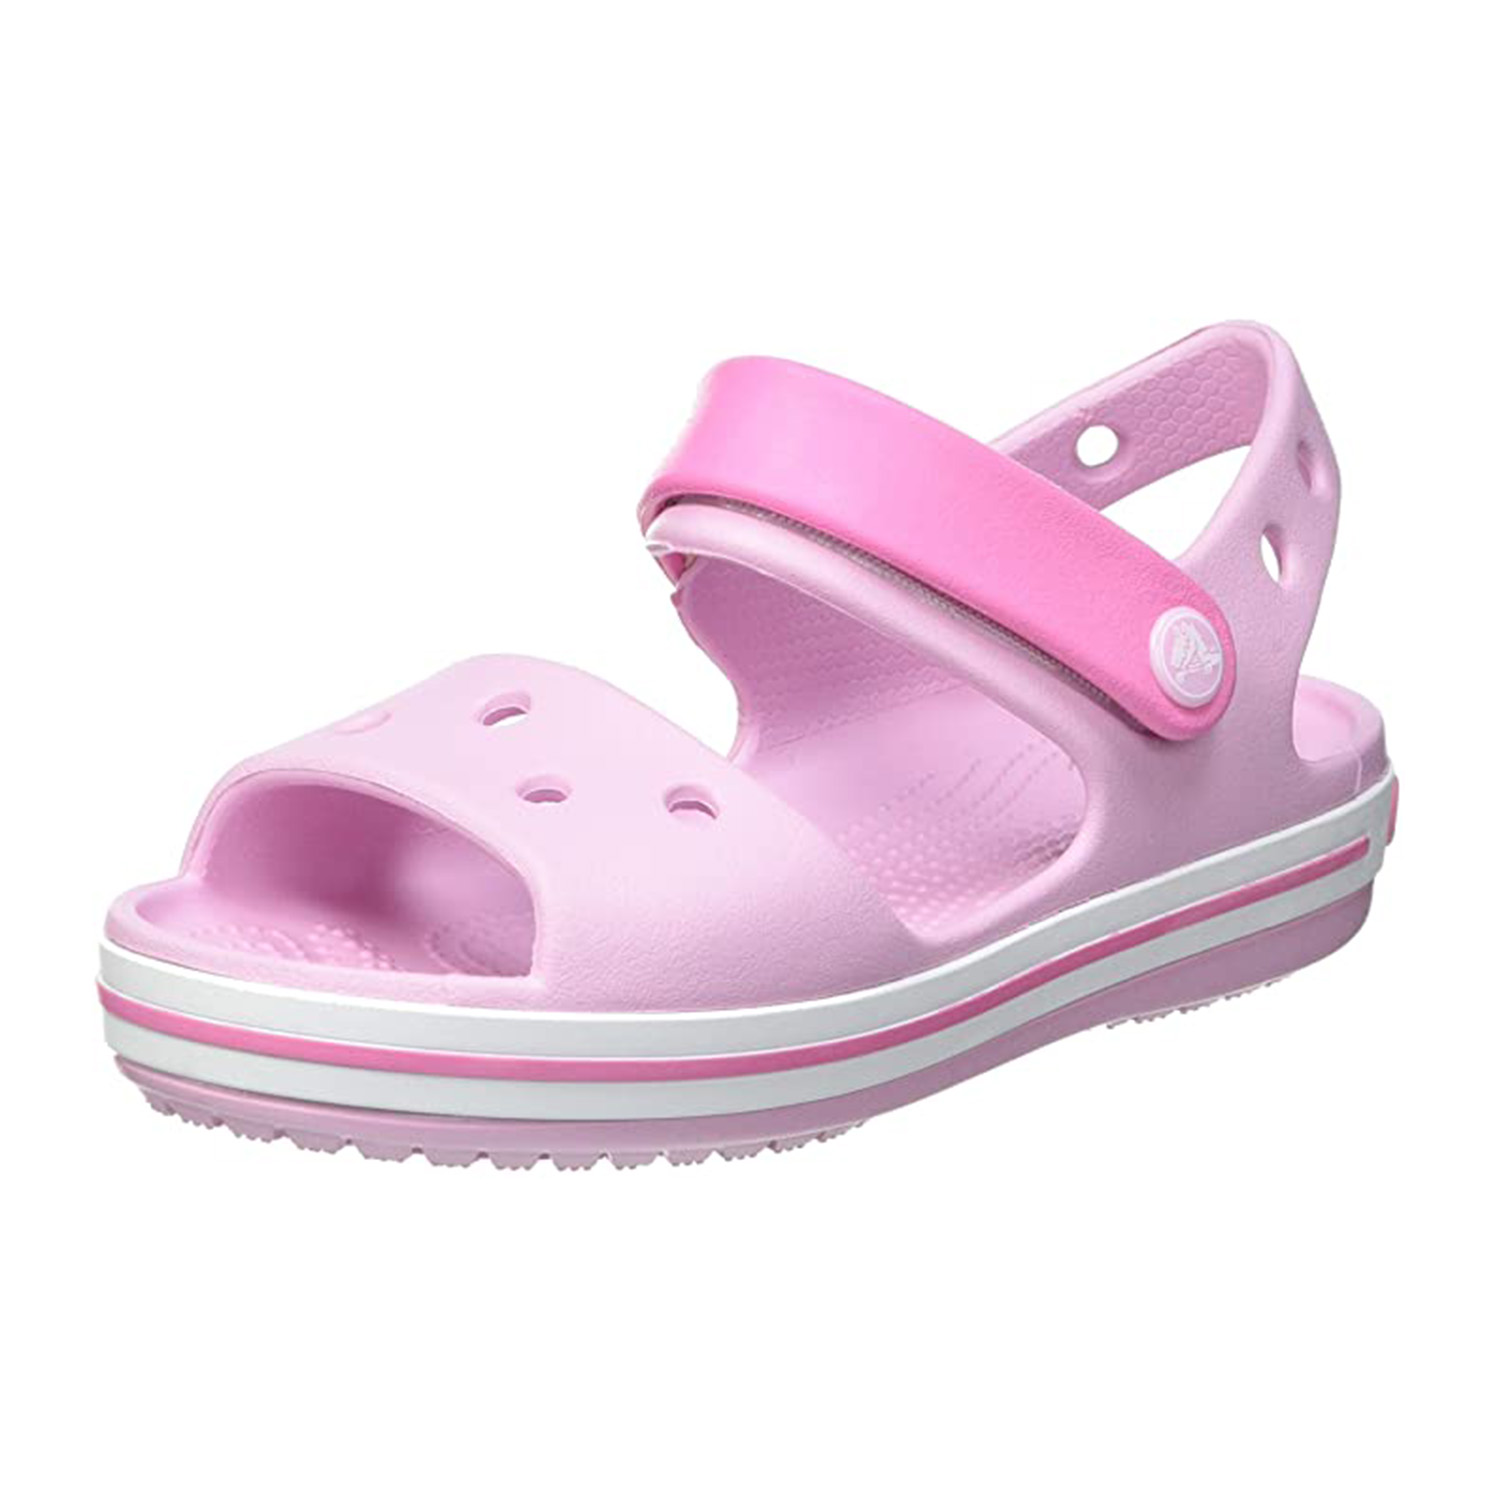 Crocs Crocband Sandal Kids Unisex Sandalen Kinder Sommerschuhe 12856 rosa